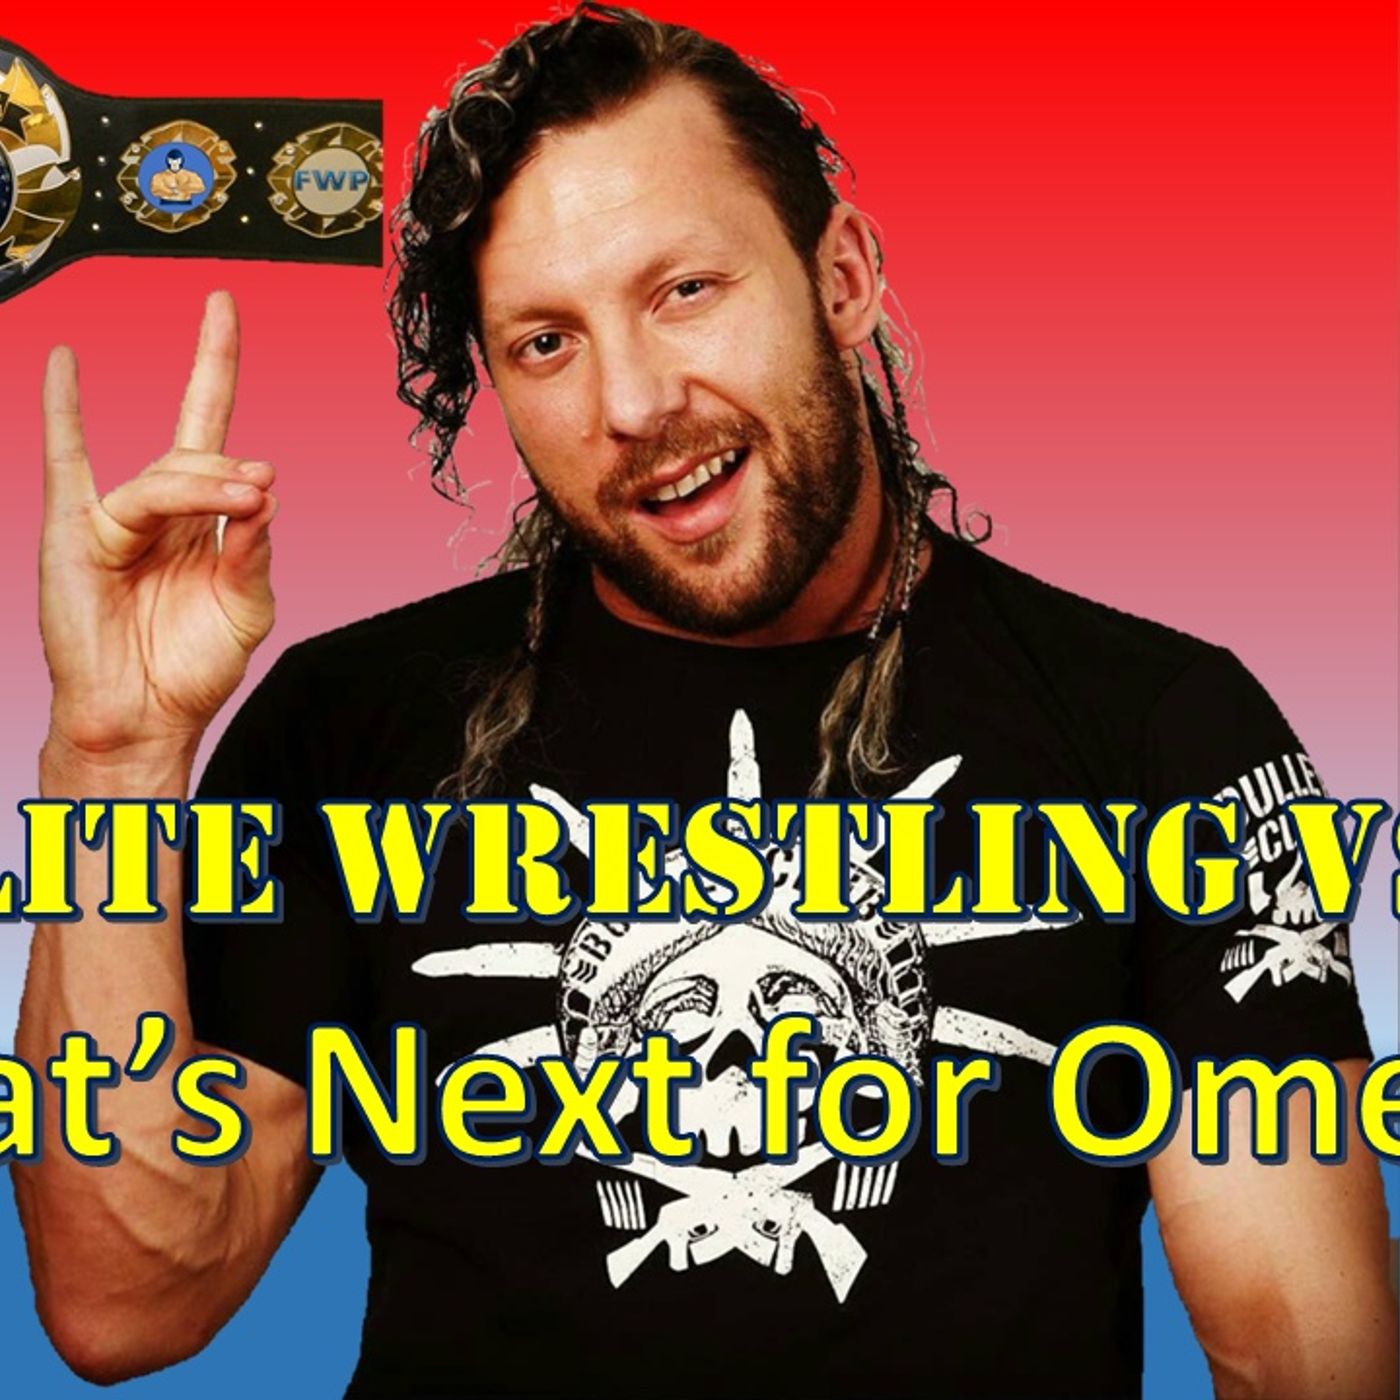 All Elite Wrestling vs WWE - What's Next for Omega?